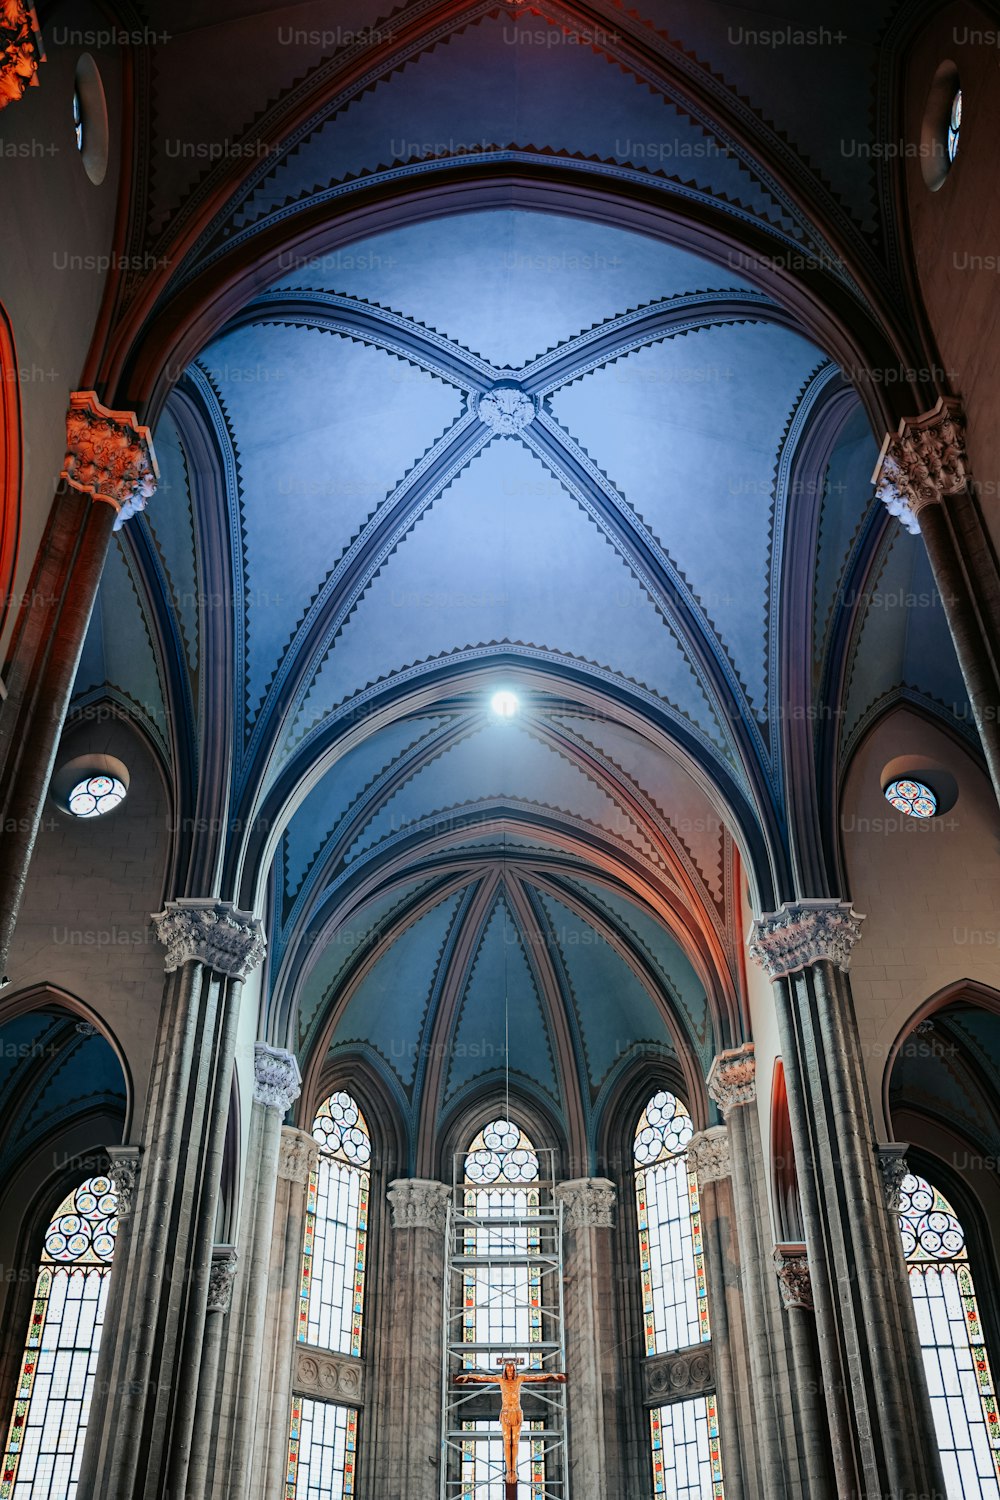 높은 아치형 천장과 스테인드 글라스 창문이있는 대형 성당